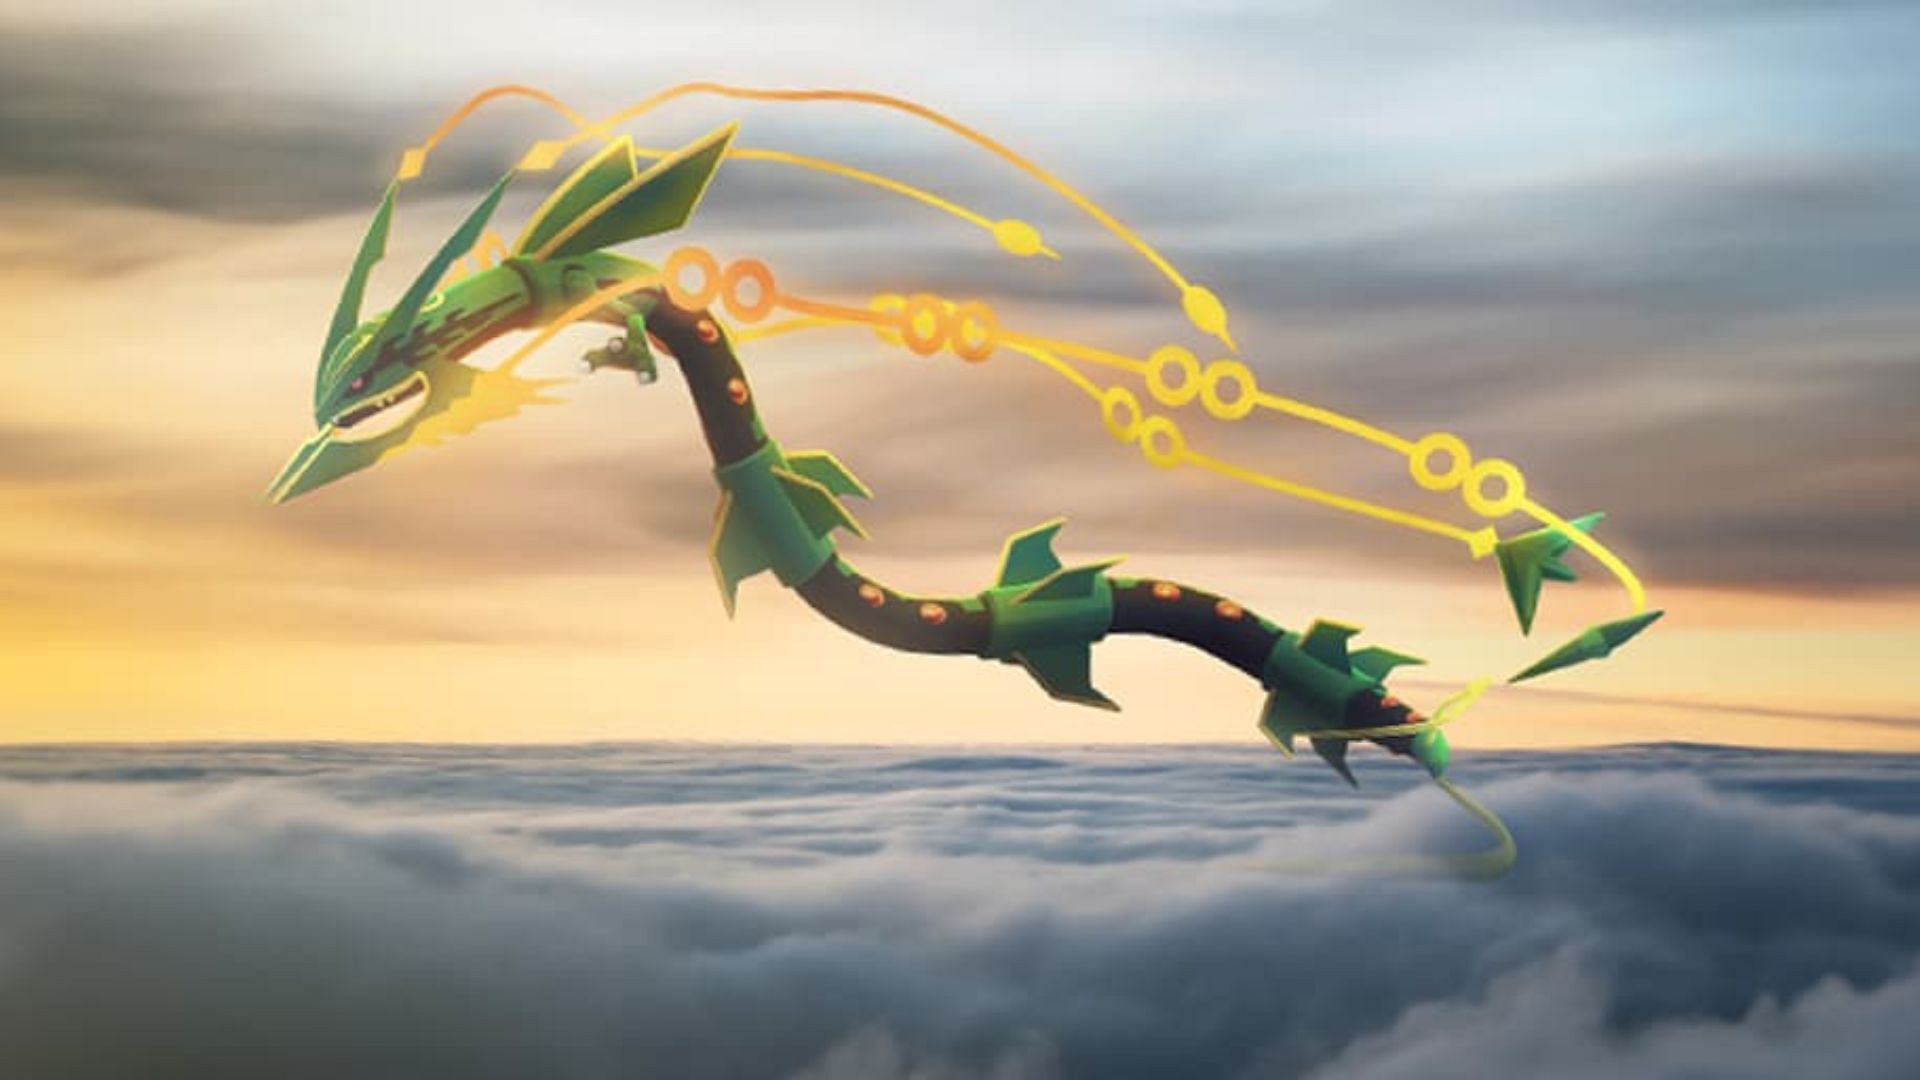 Rayquaza knows Dragon Ascent move (Image via TPC)